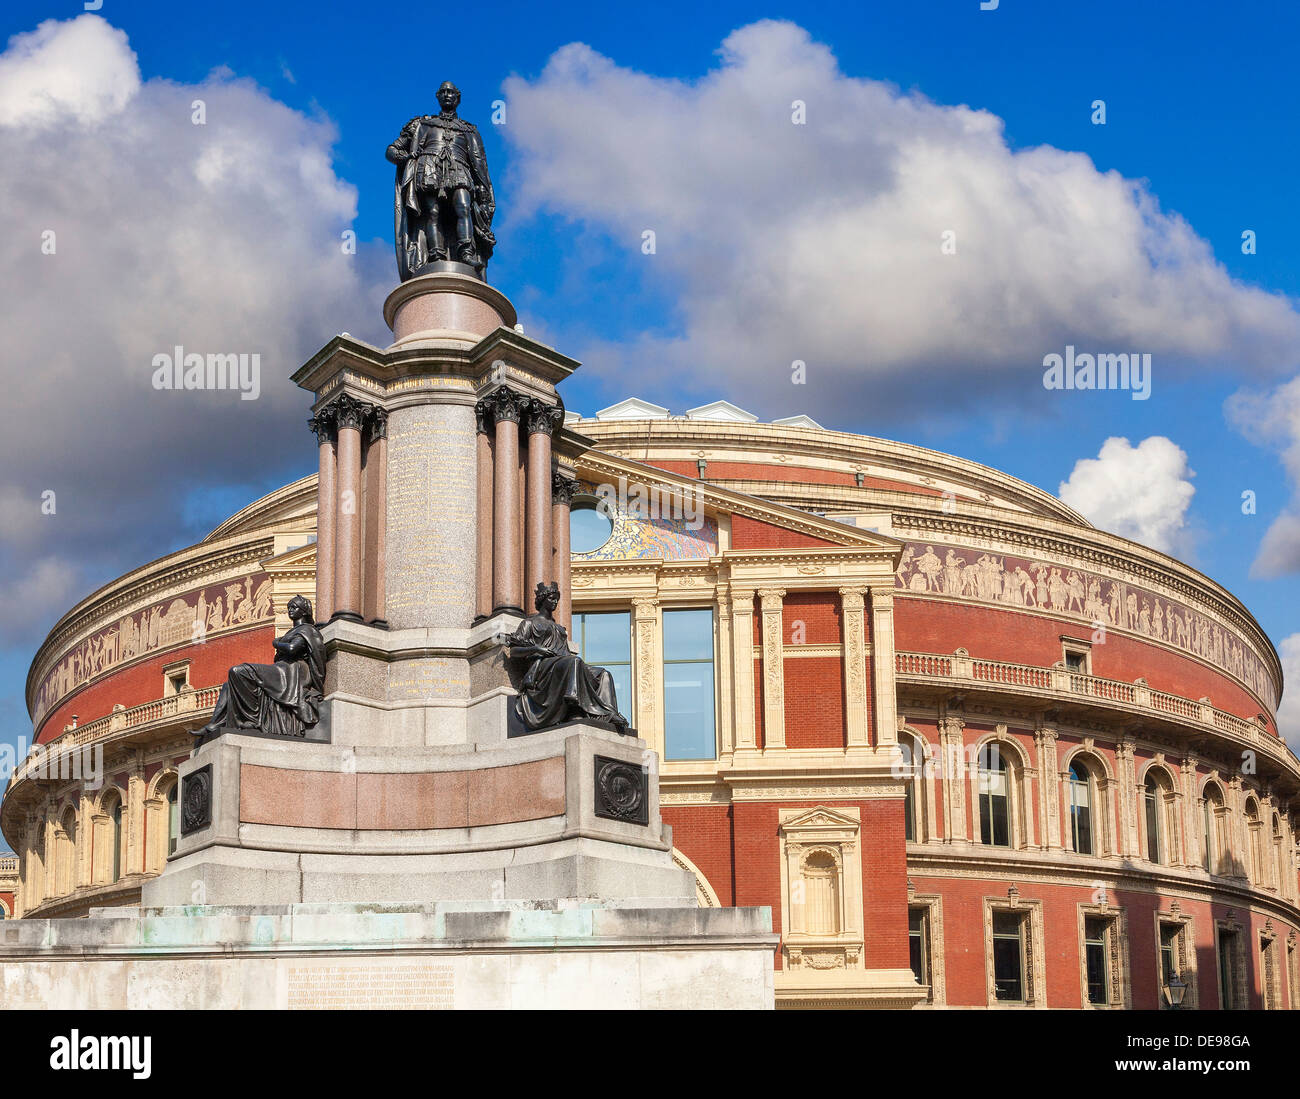 Die Royal Albert Hall, London, UK, Rückansicht von Prinzgemahl Straße, hoch aufragende Statue von Prinz Albert im Vordergrund Stockfoto